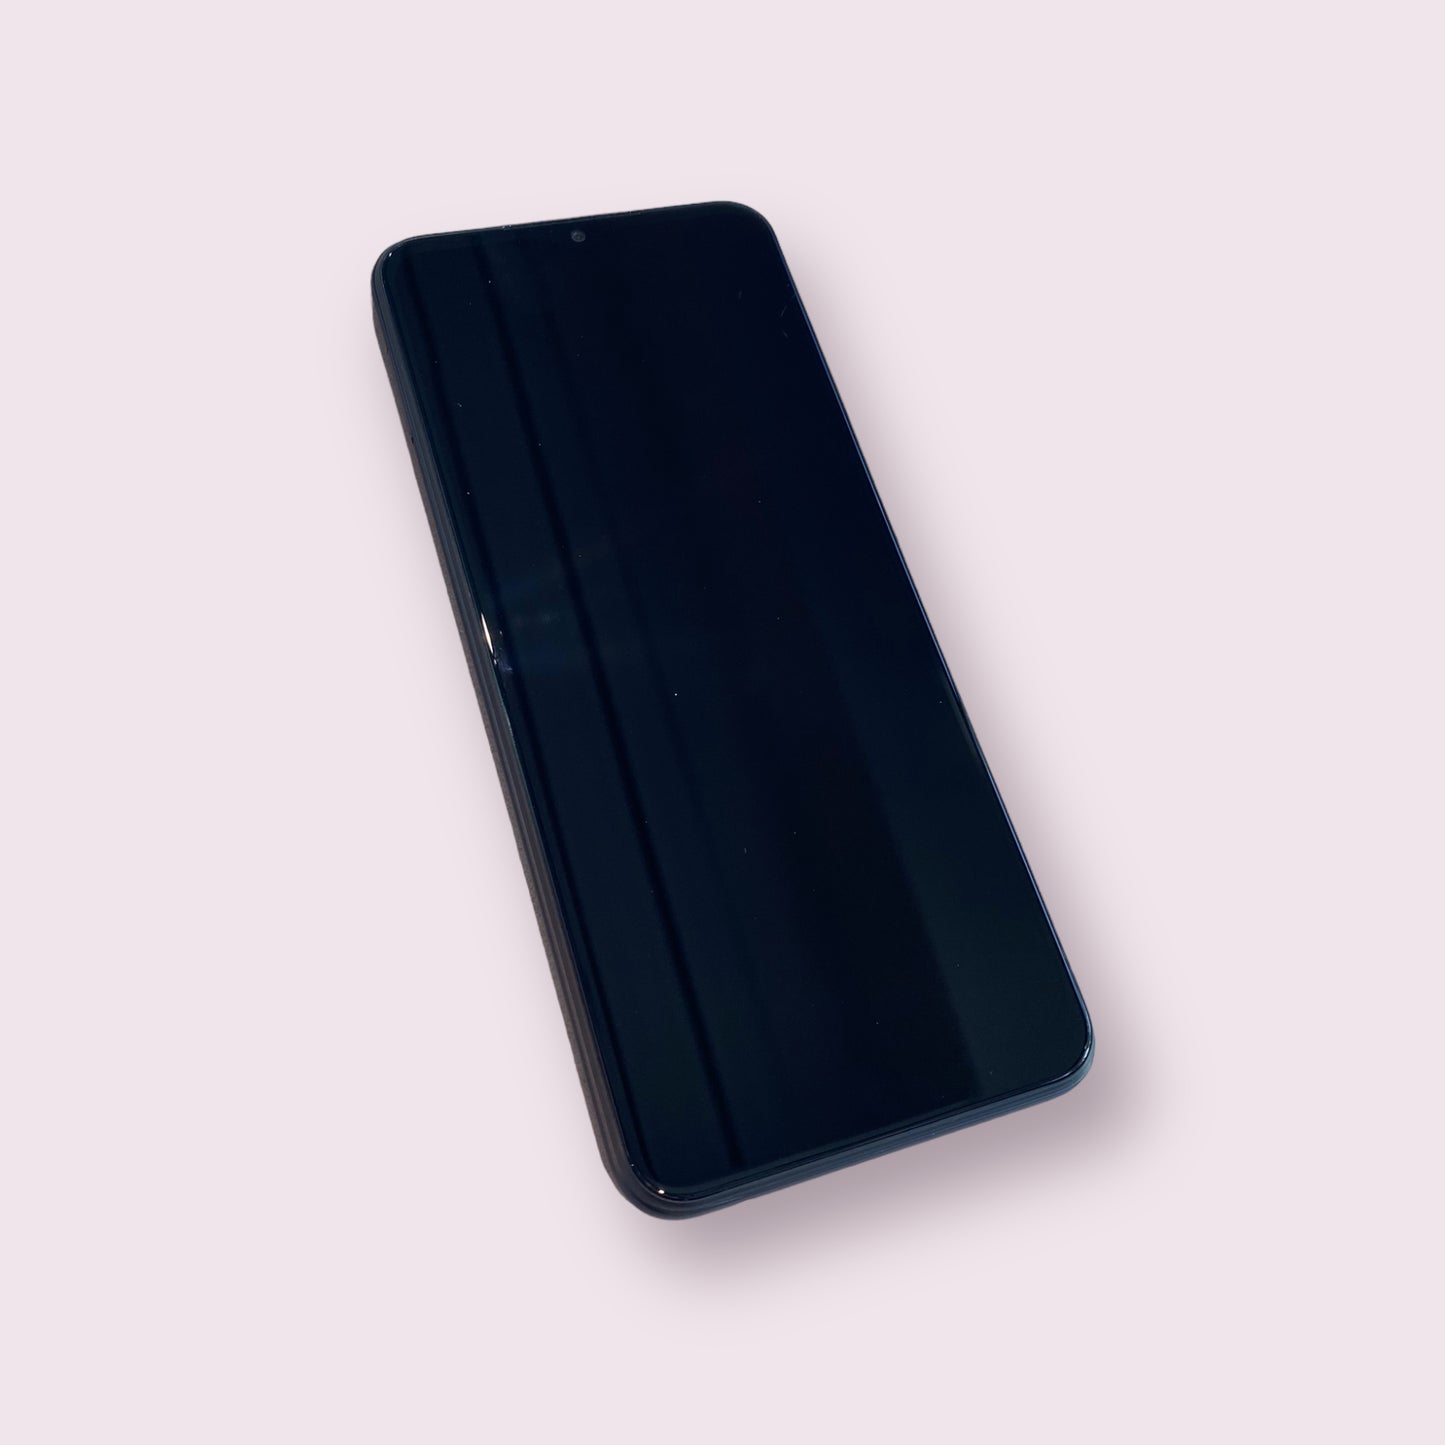 Samsung Galaxy A22 5G A226B 64GB black Dual Sim smartphone - Unlocked - Grade A